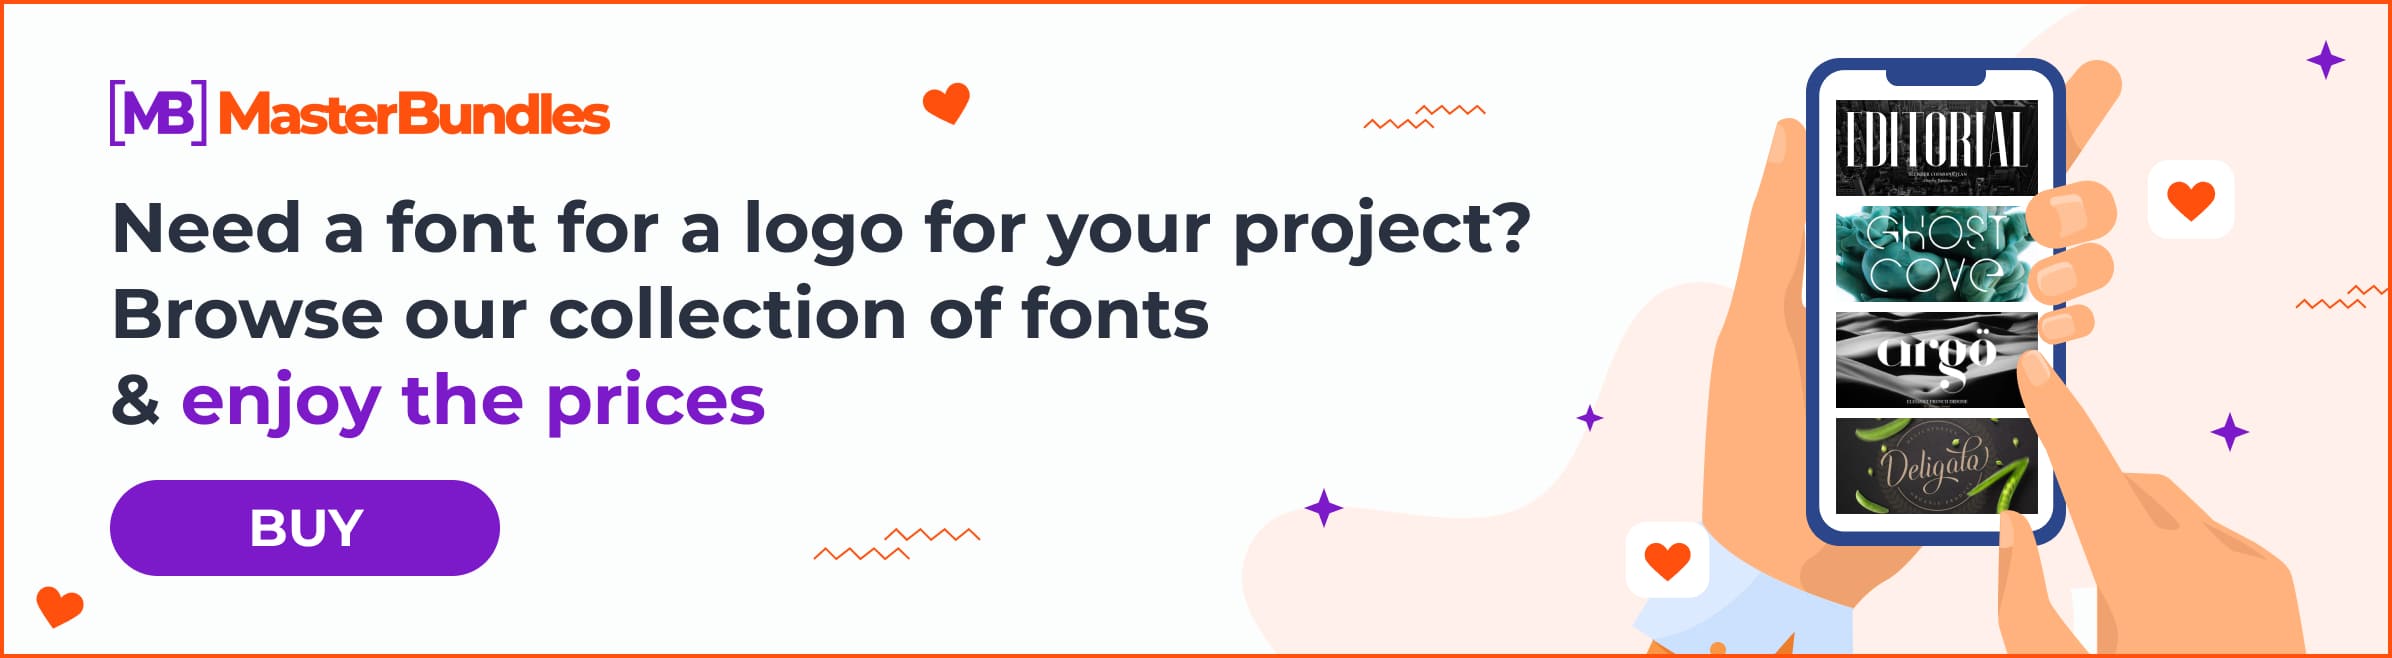 Banner for downloading fonts.